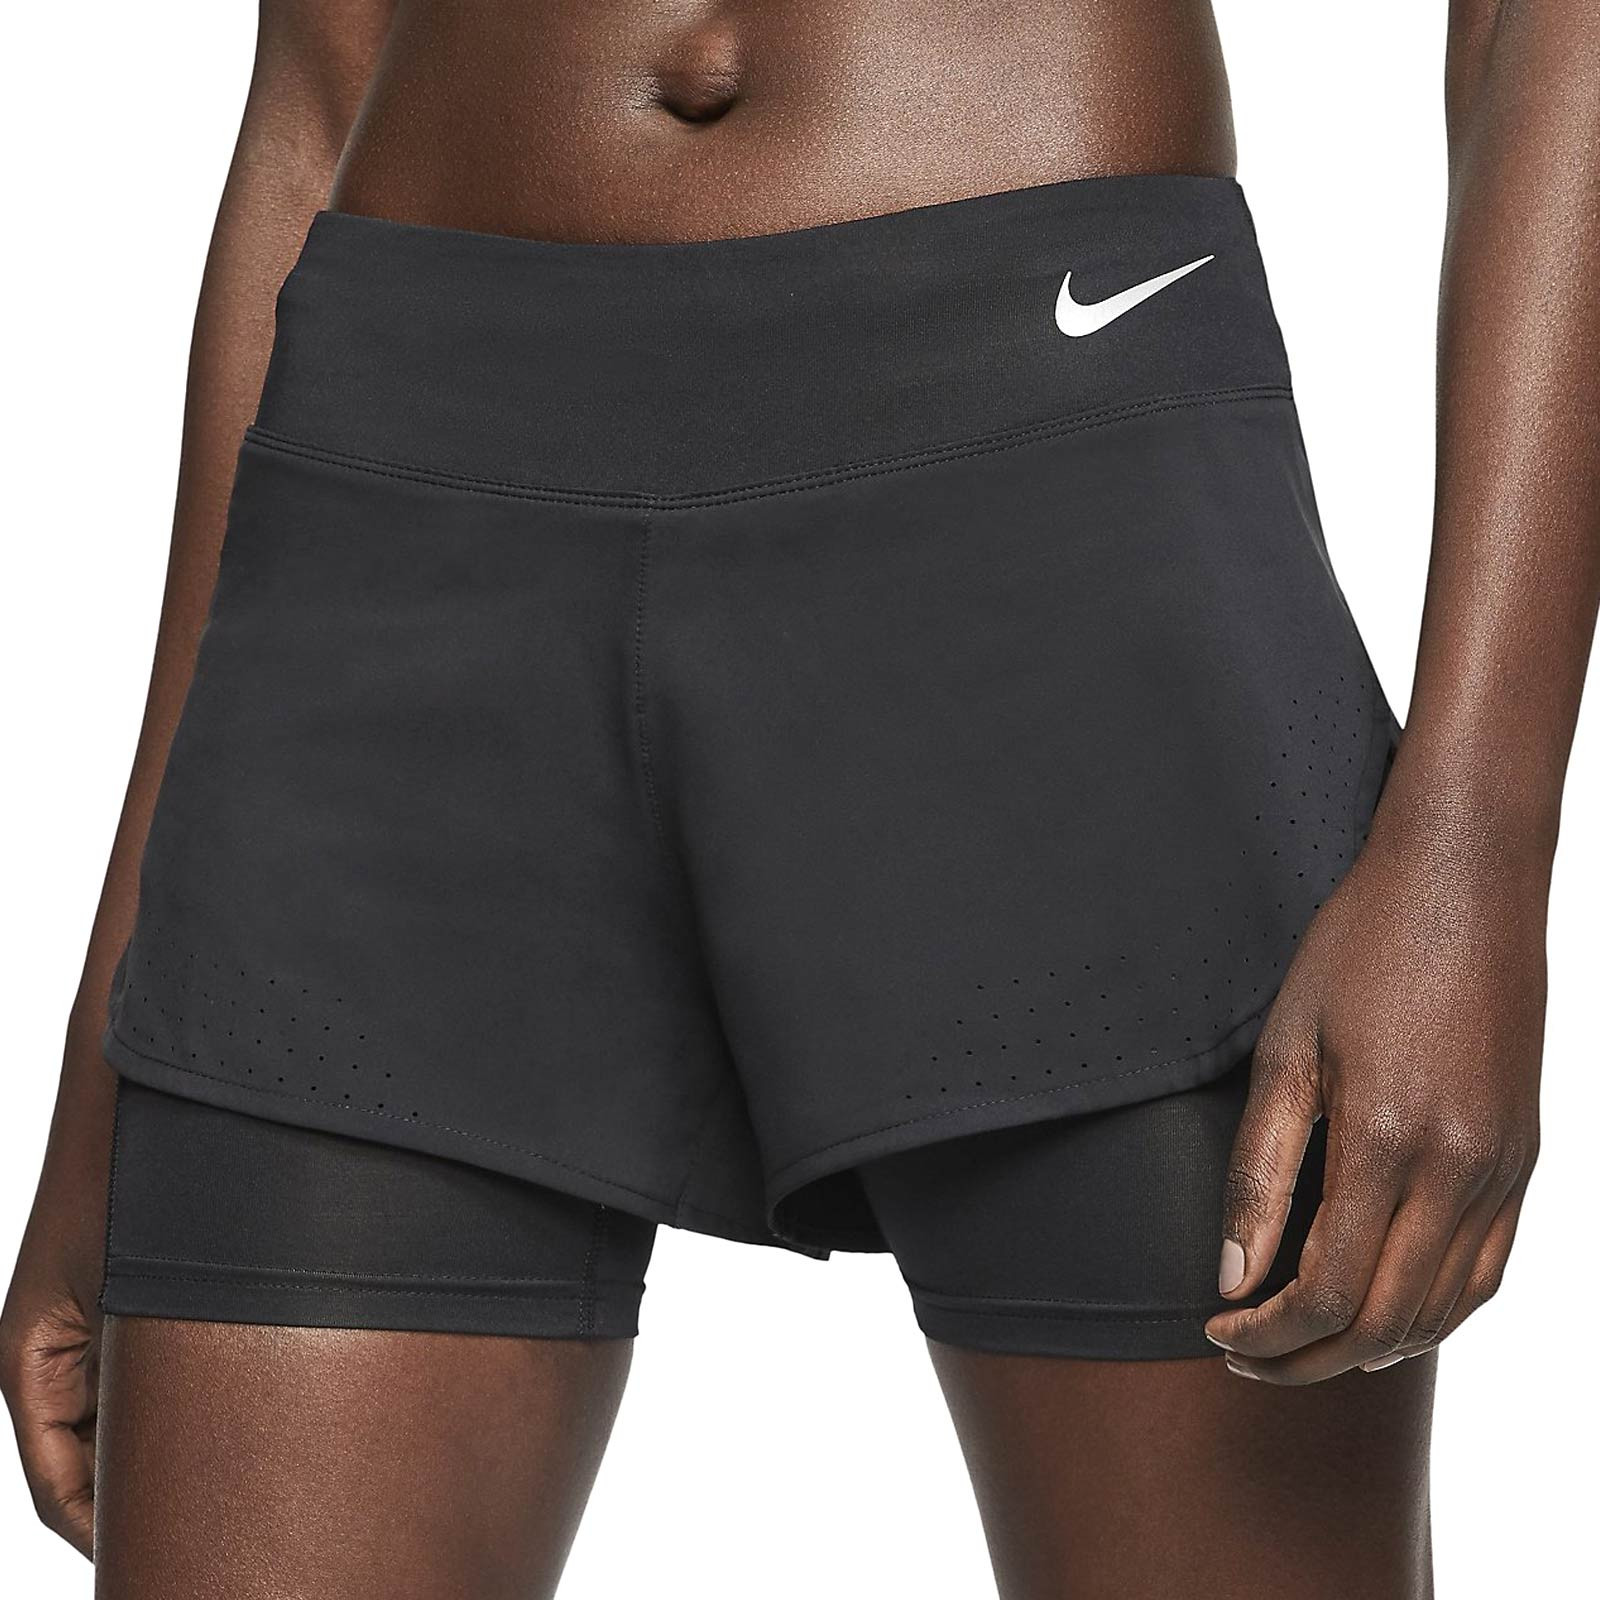 Provisional Adulto mimar Short con malla mujer Nike Eclipse negro | futbolmania